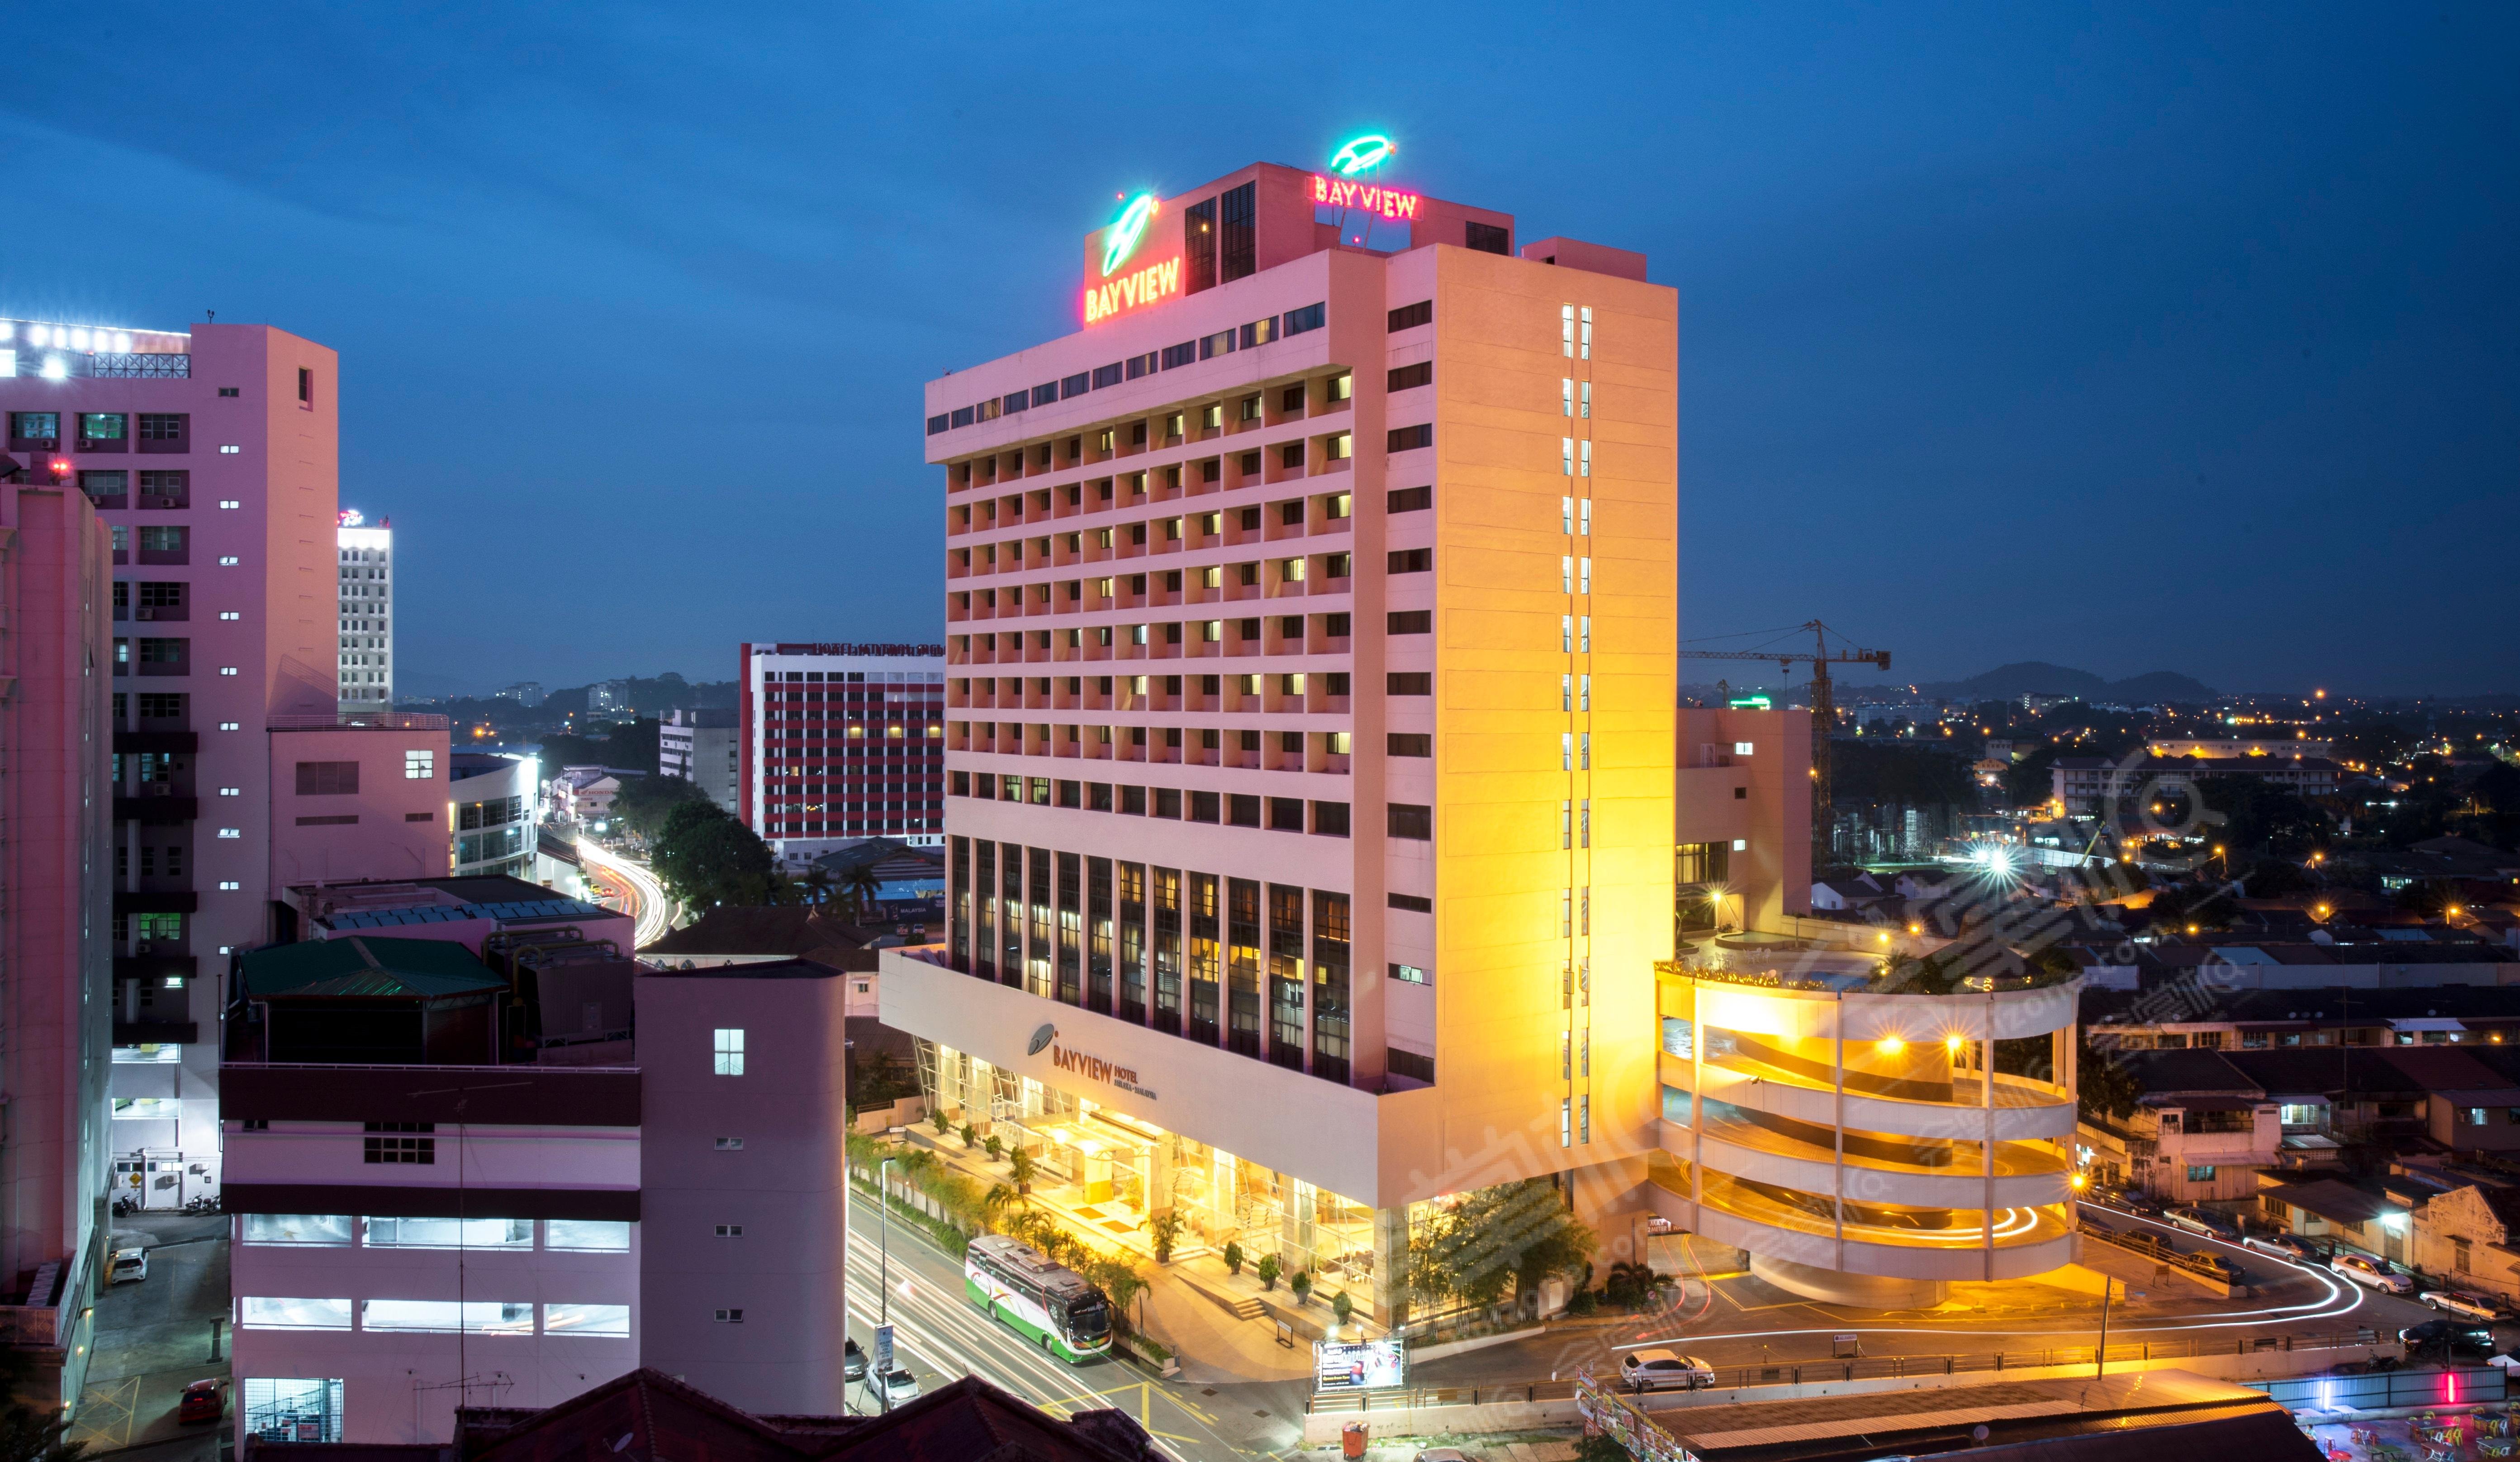 马六甲四星级酒店最大容纳200人的会议场地|海湾酒店(Bayview Hotel Melaka)的价格与联系方式